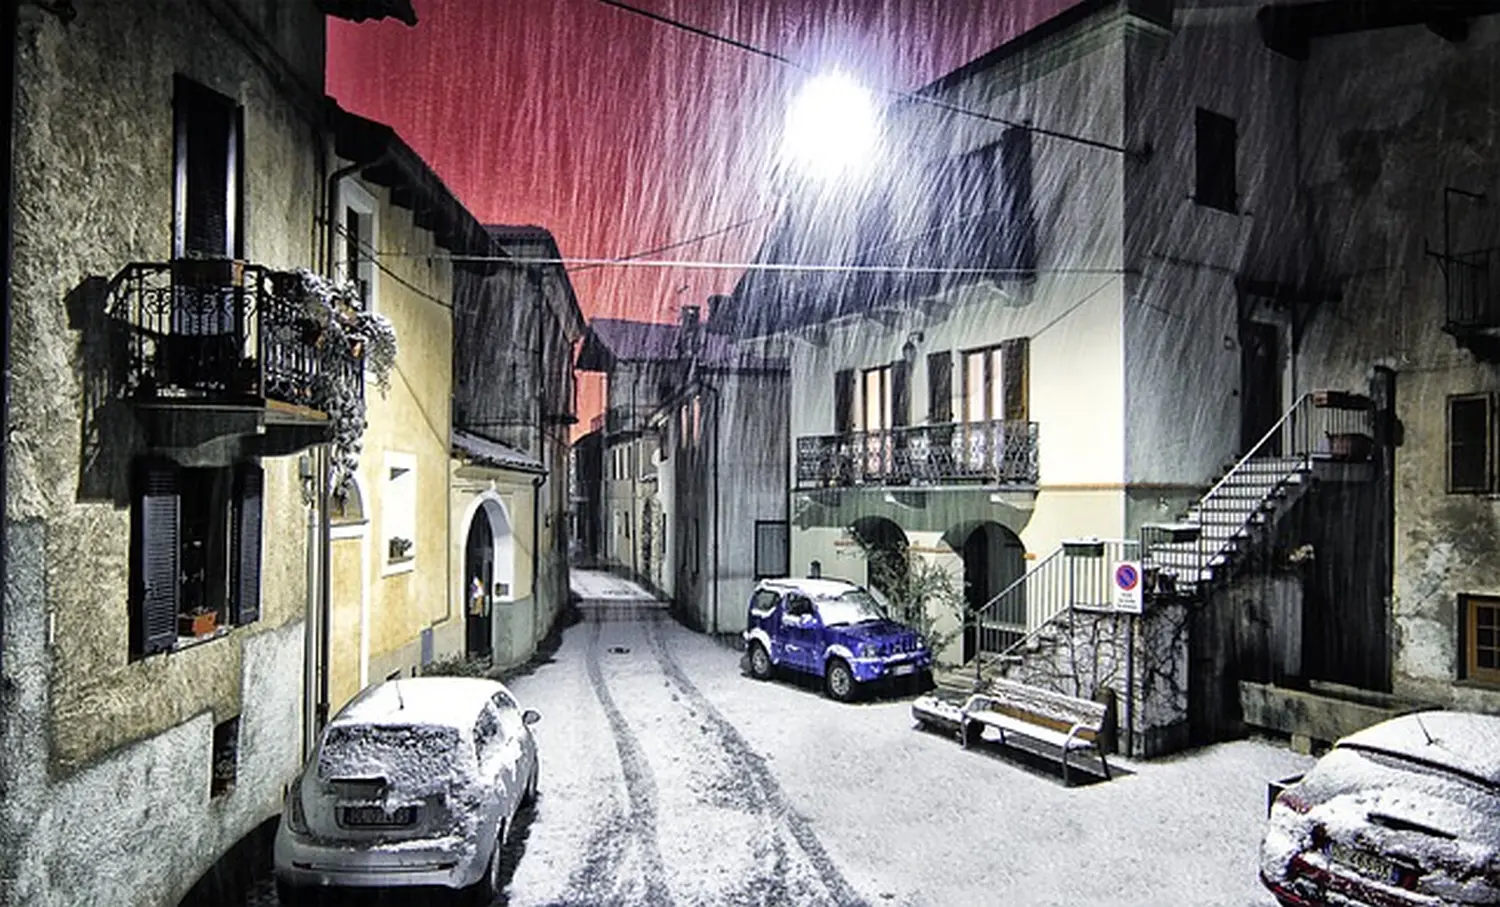 Hausmeisterservice, Schneefall auf der Straße